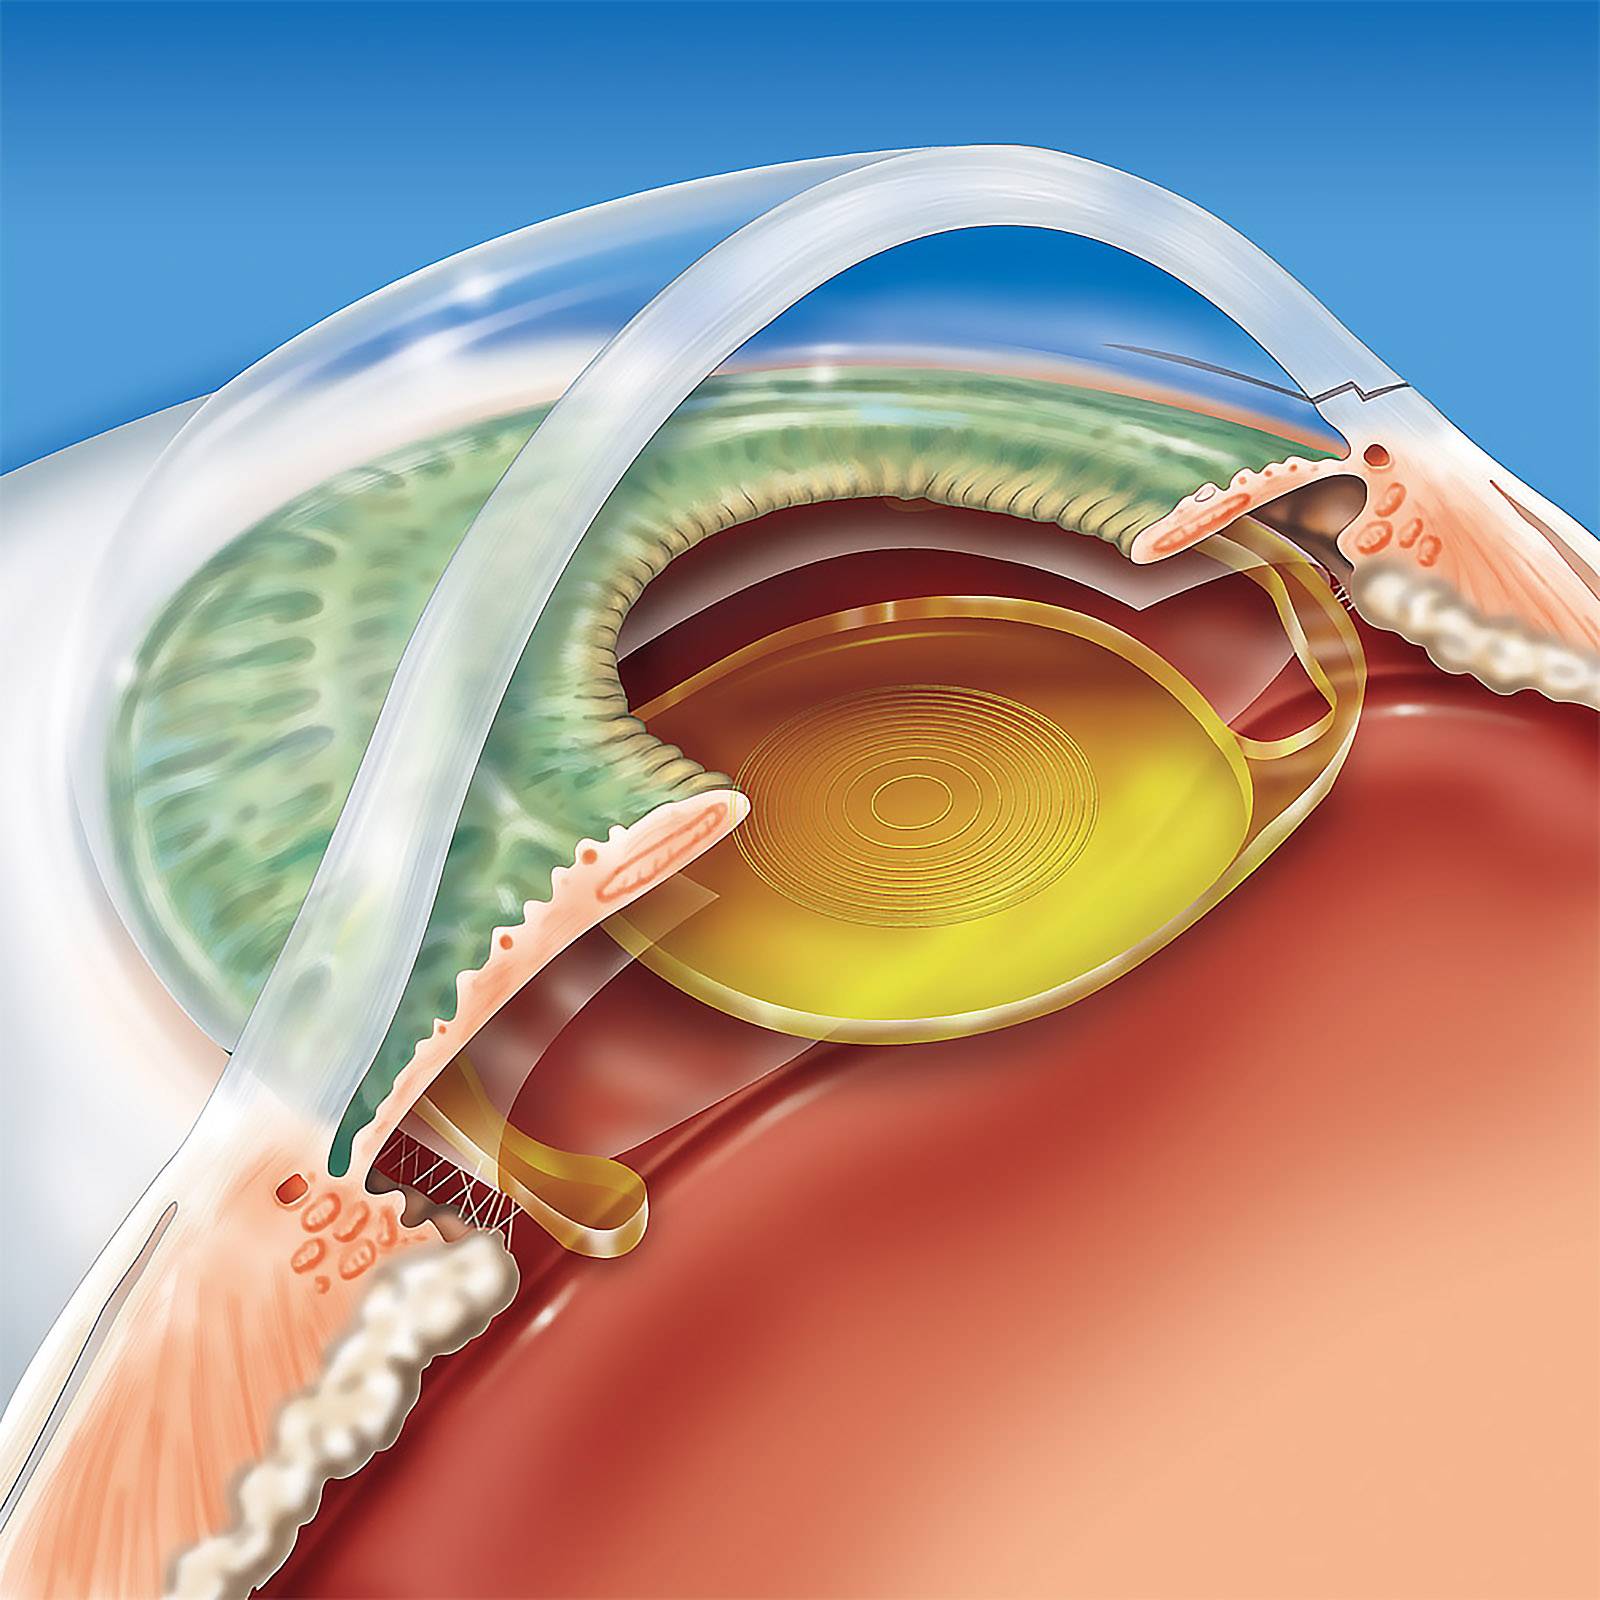 Диагноз катаракта? лечение без операции возможно?